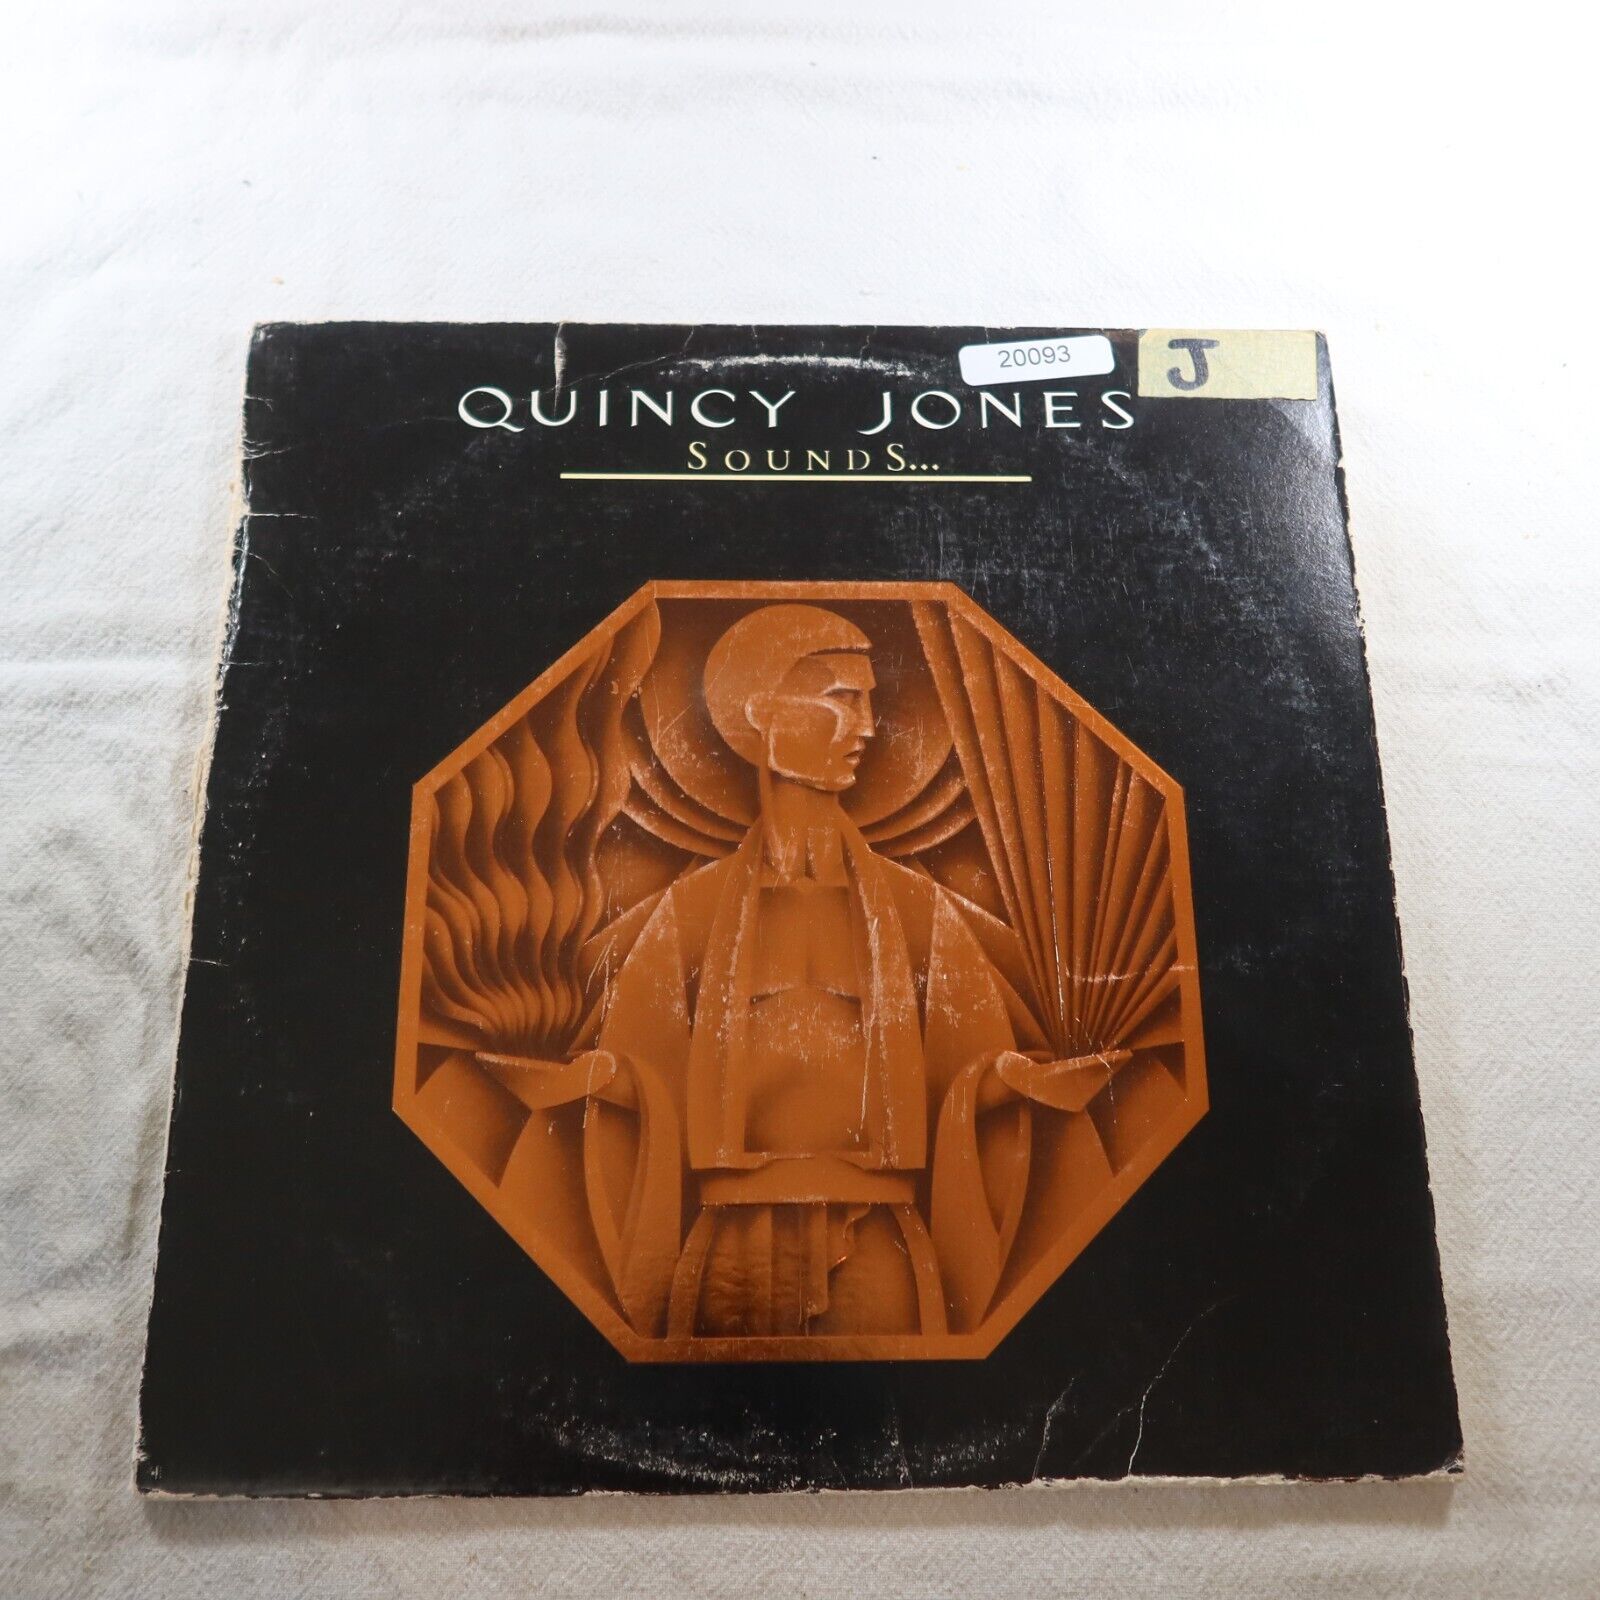 Quincy Jones Sounds   Record Album Vinyl LP